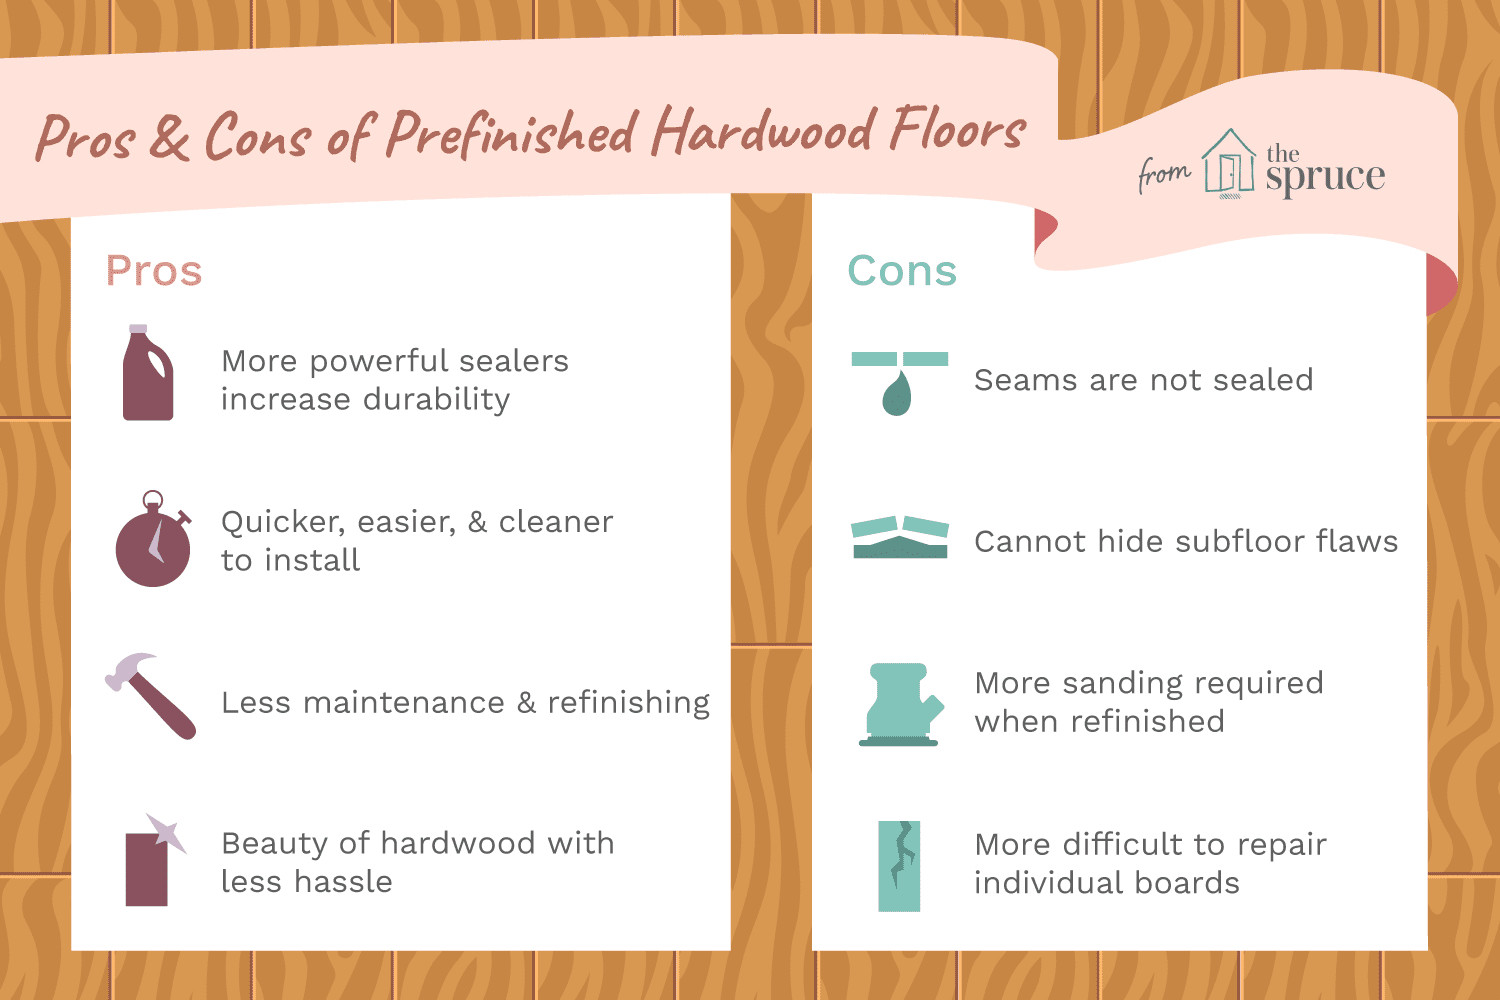 hardwood floor refinishing toledo of the pros and cons of prefinished hardwood flooring with prefinished hardwood floors